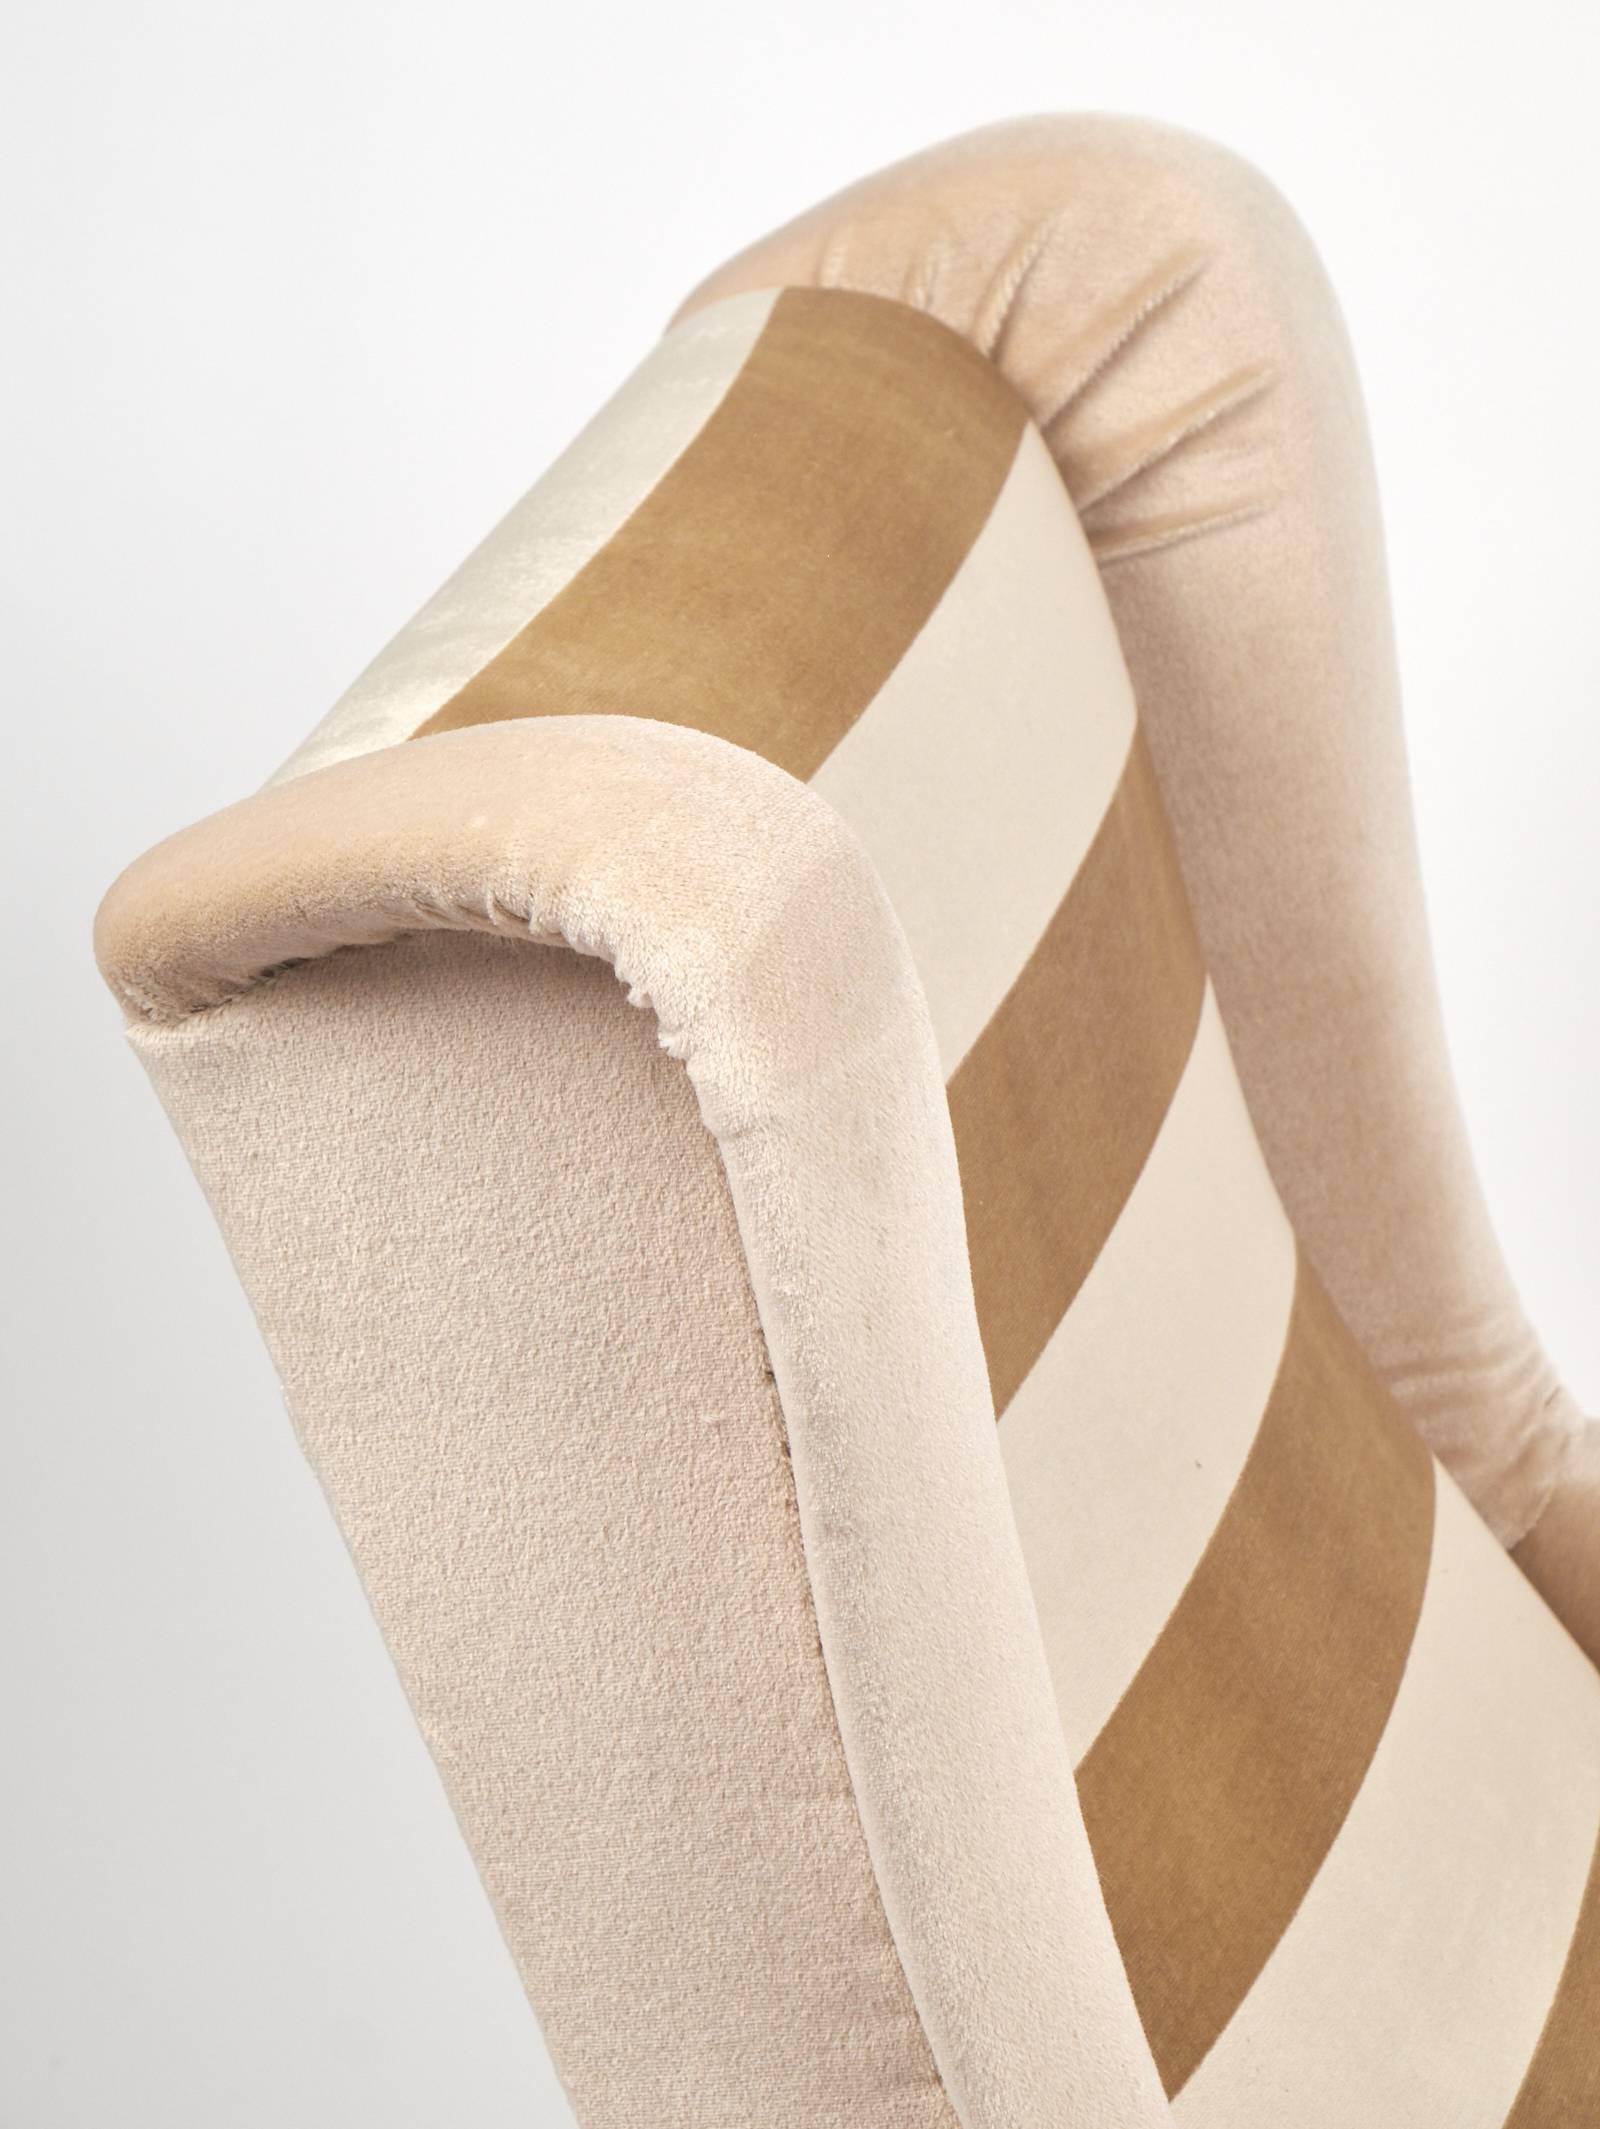 Mid-20th Century Italian Mid-Century Modern Striped Velvet Armchairs